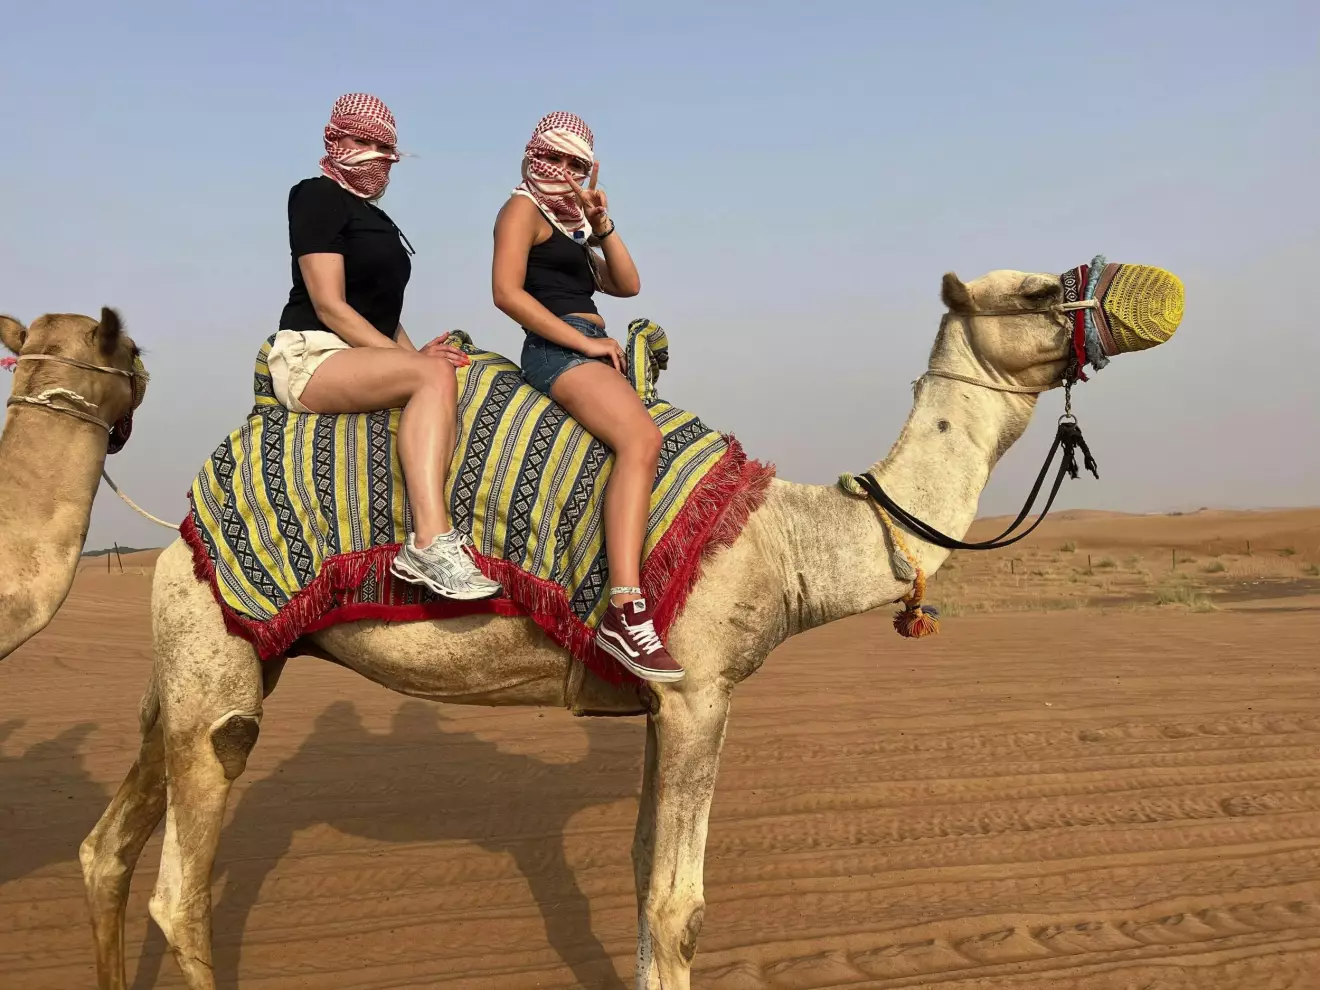 Två kvinnor sitter på en kamel. En av dem gör peace-tecken.